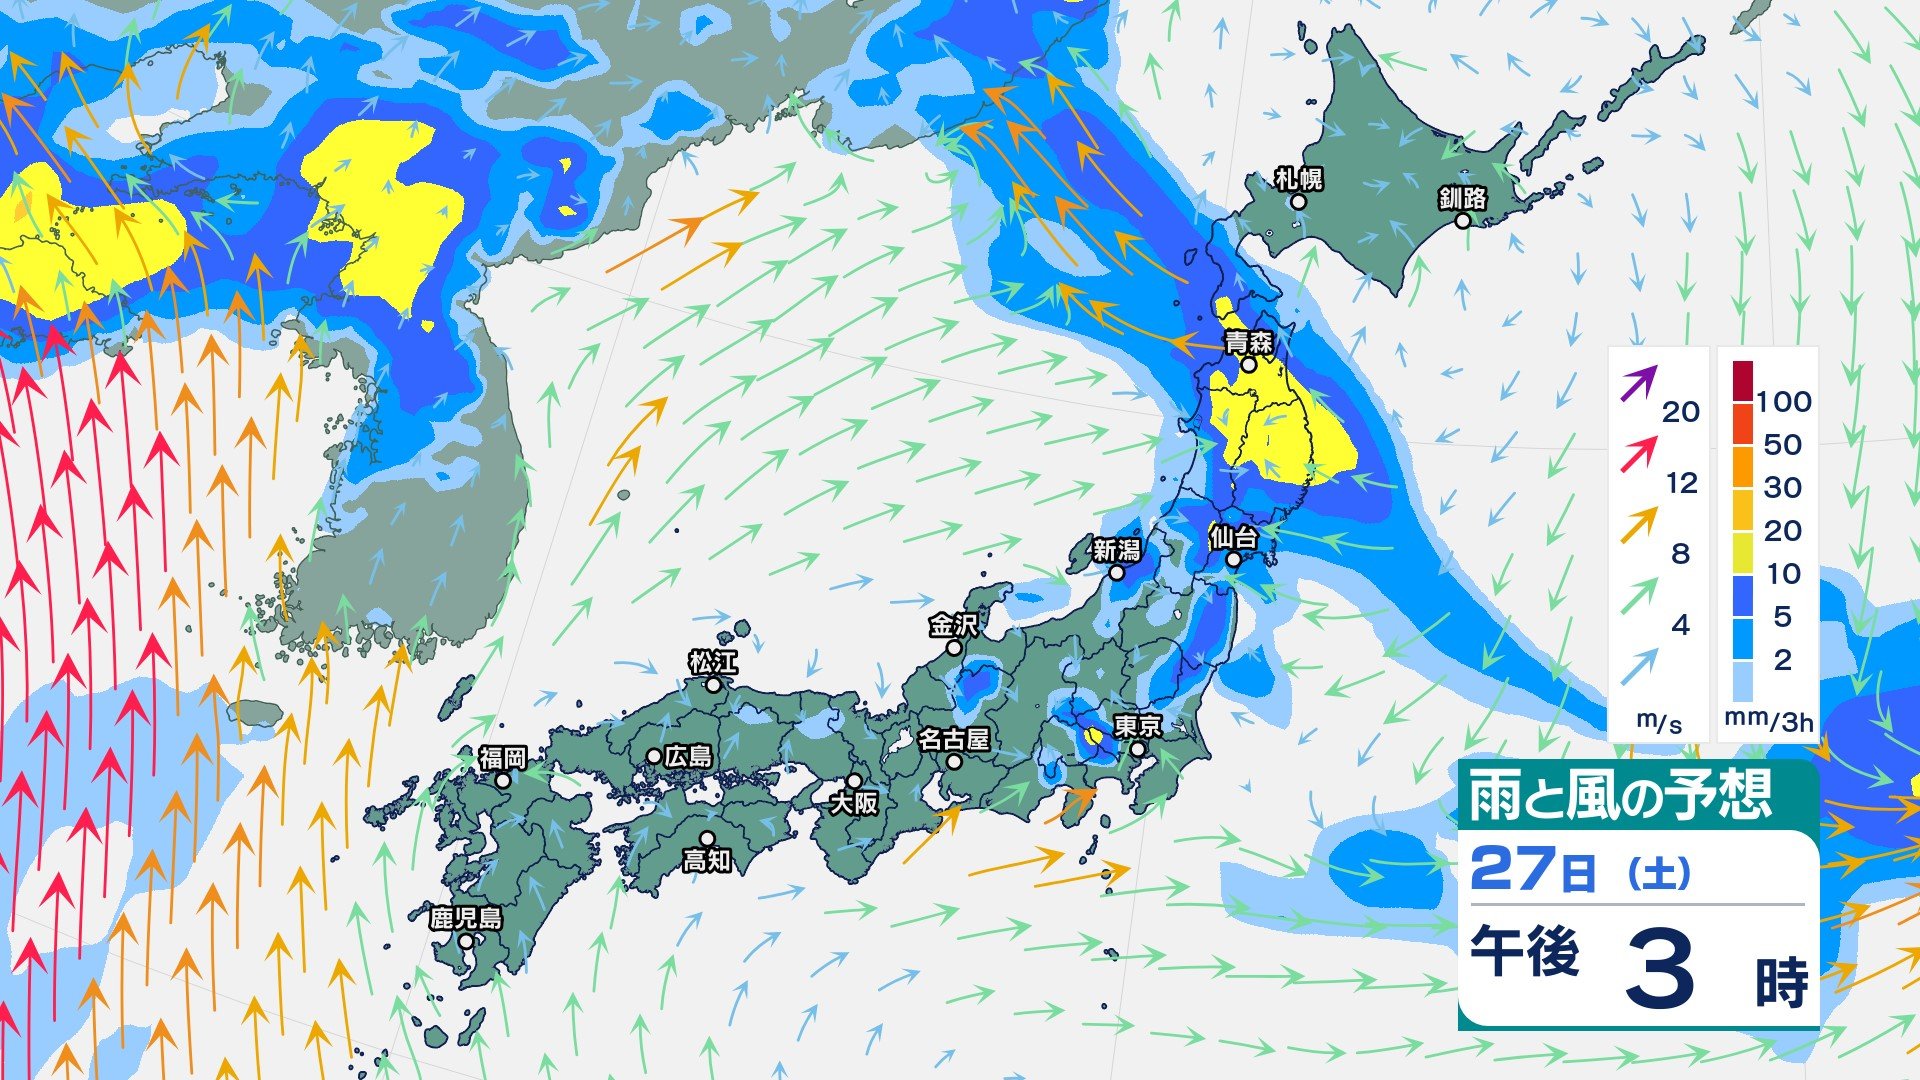 東北日本海側では28日夕方までに300ミリの雨の予想　関東甲信でも27日夕方までに100ミリの雨か【大雨情報・31日(水)までの雨風シミュレーション】